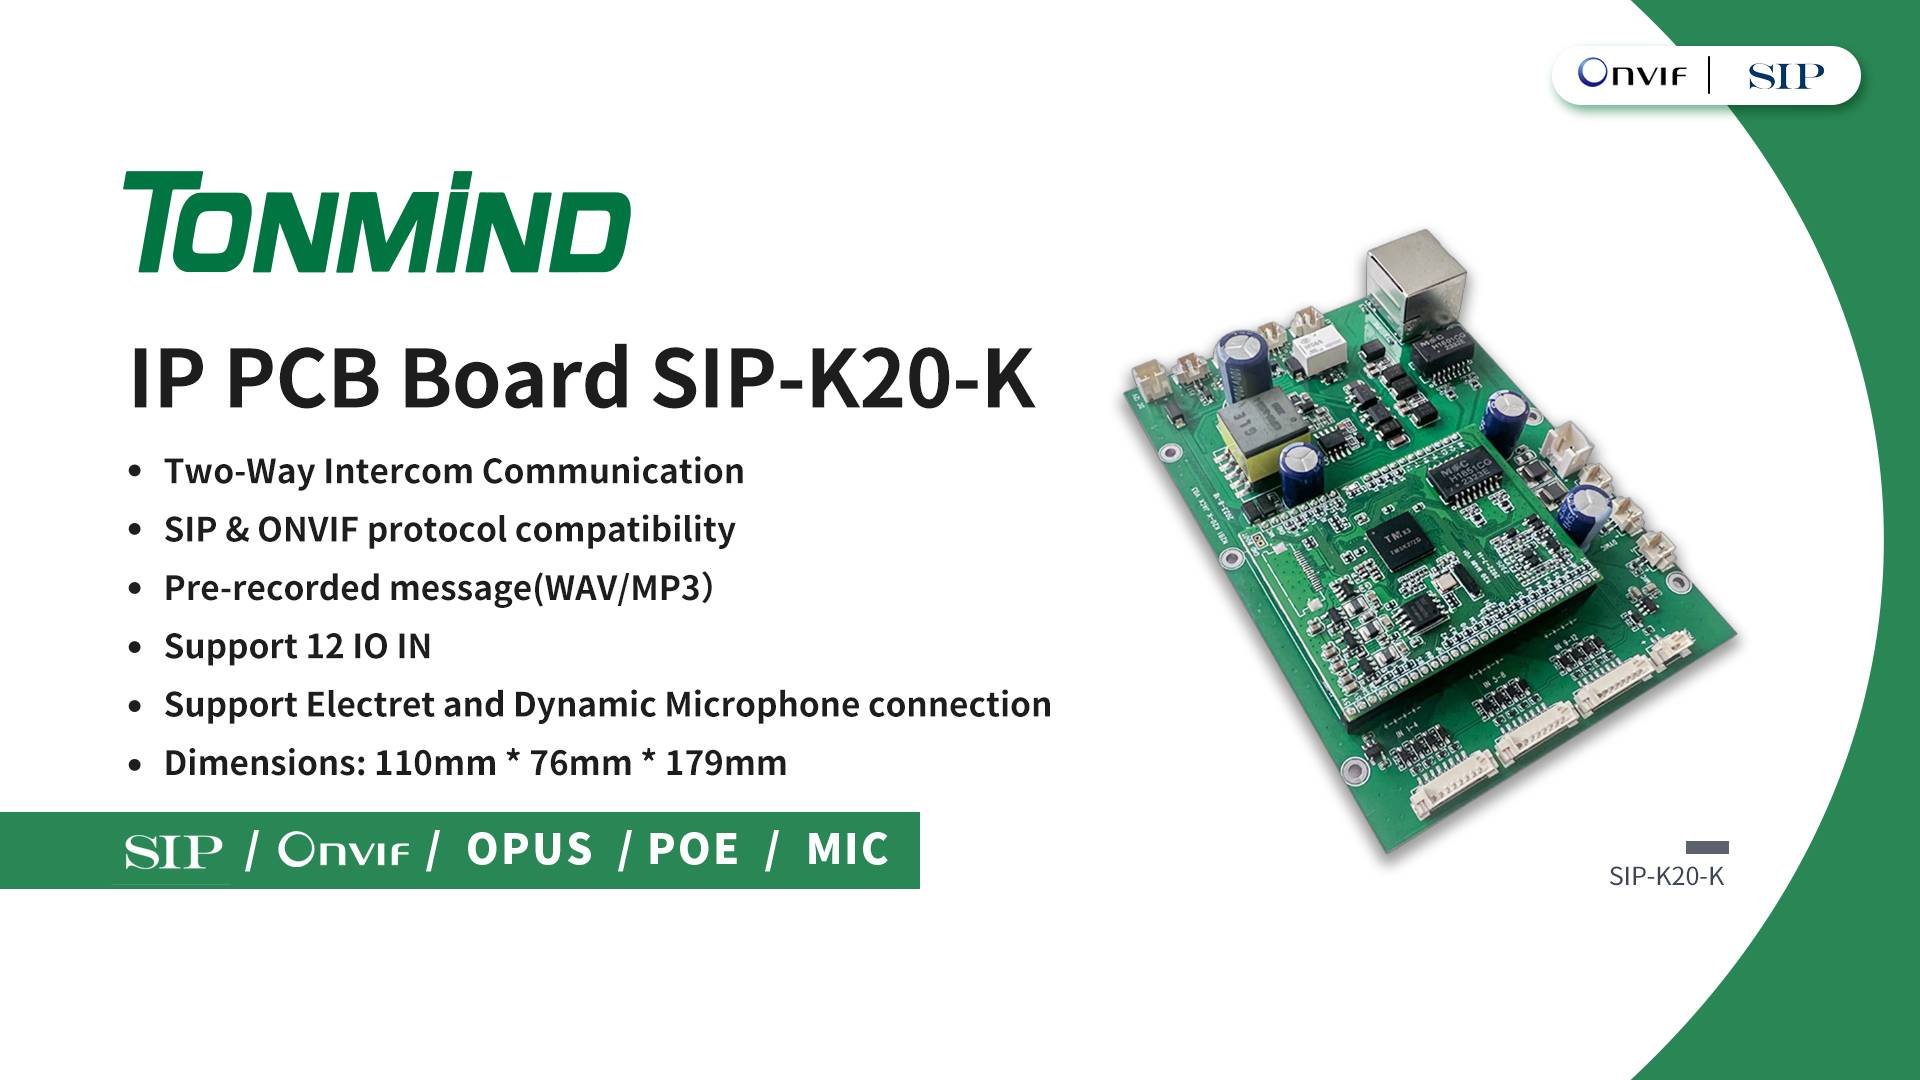 Tonmind stellt neues Produkt IP PCB Board K20-K für verbesserte Kommunikationslösungen vor